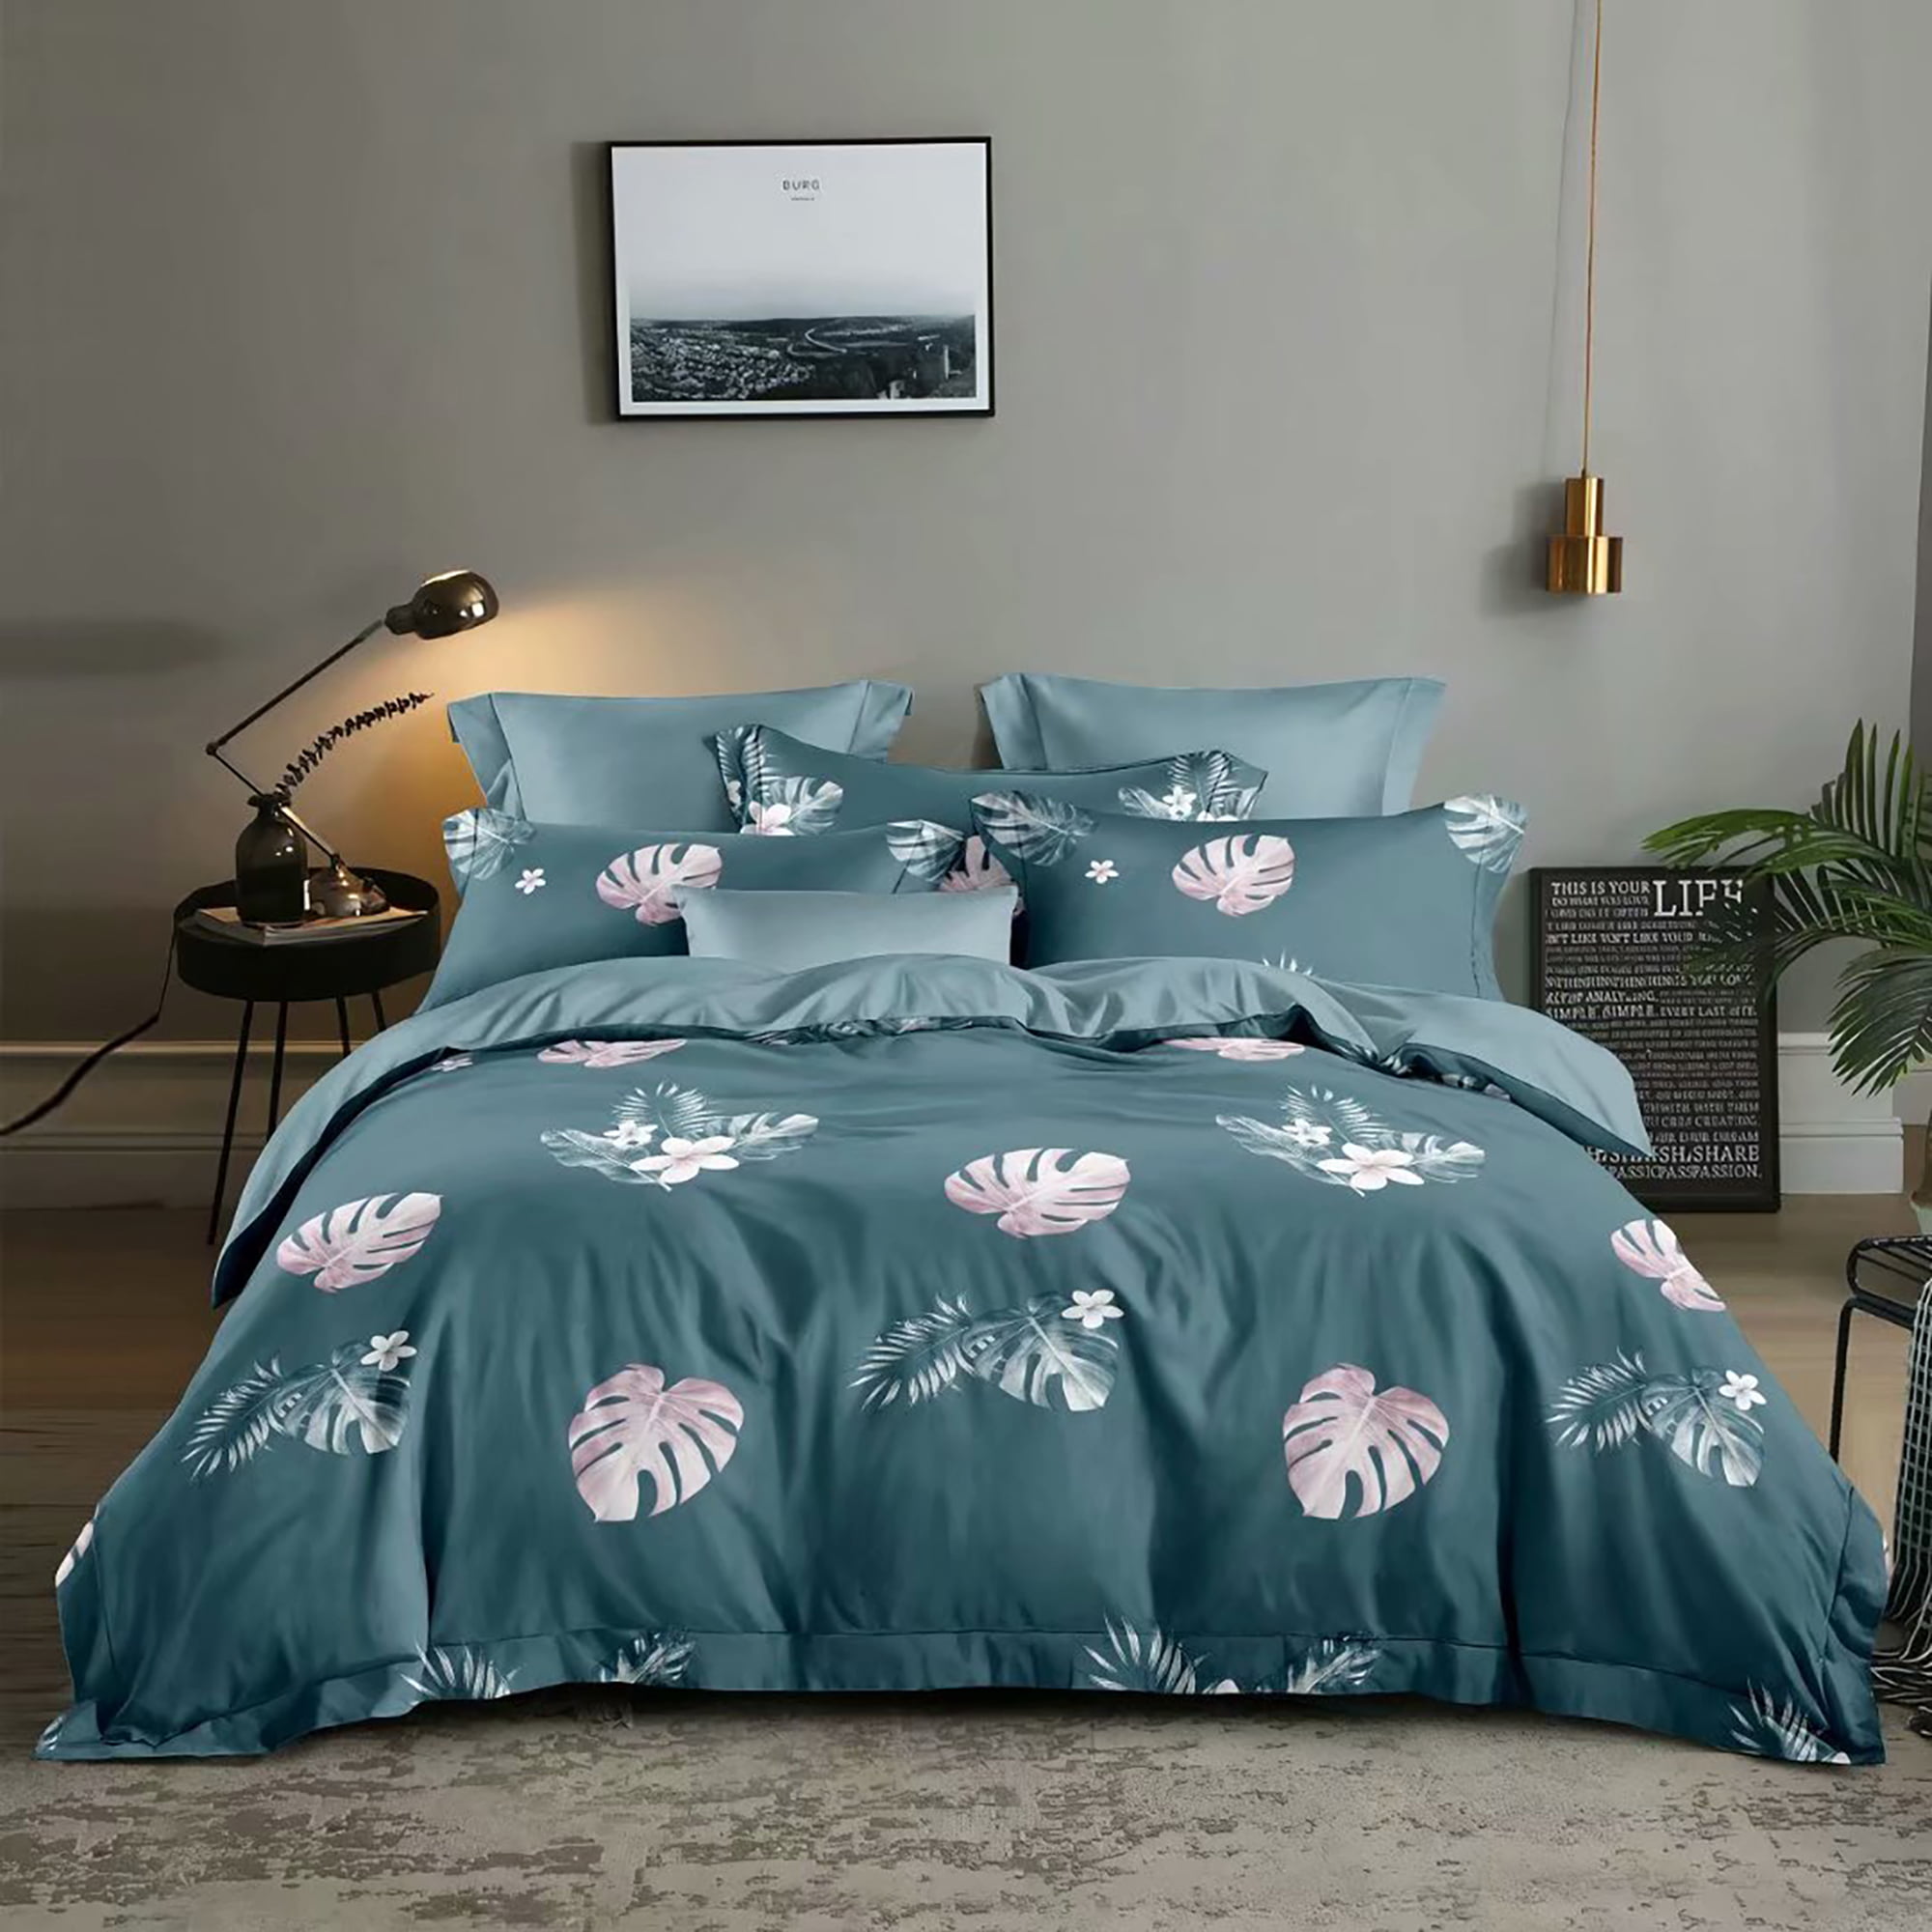 HGmart Bedding Comforter Set Bed In A Bag 5Pcs Microfiber Bedding Sets Blue Leaf 